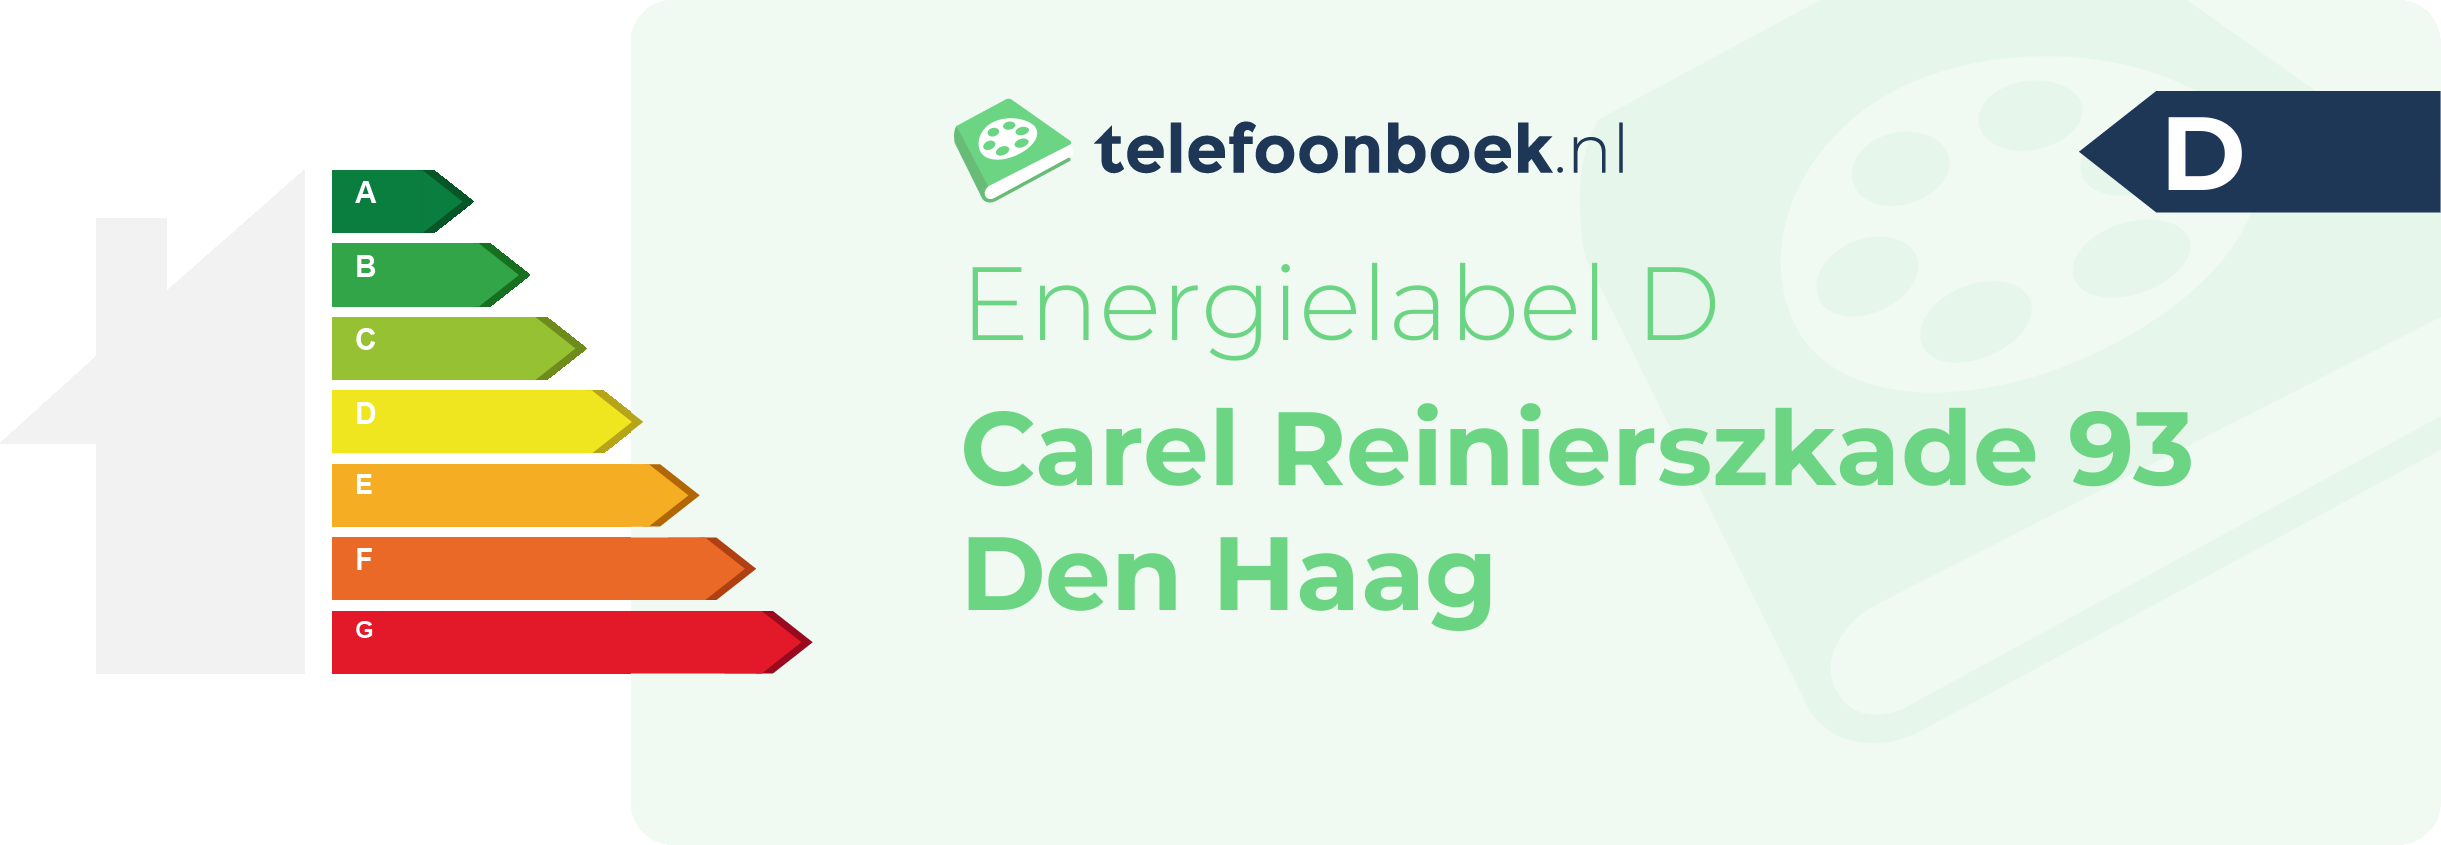 Energielabel Carel Reinierszkade 93 Den Haag